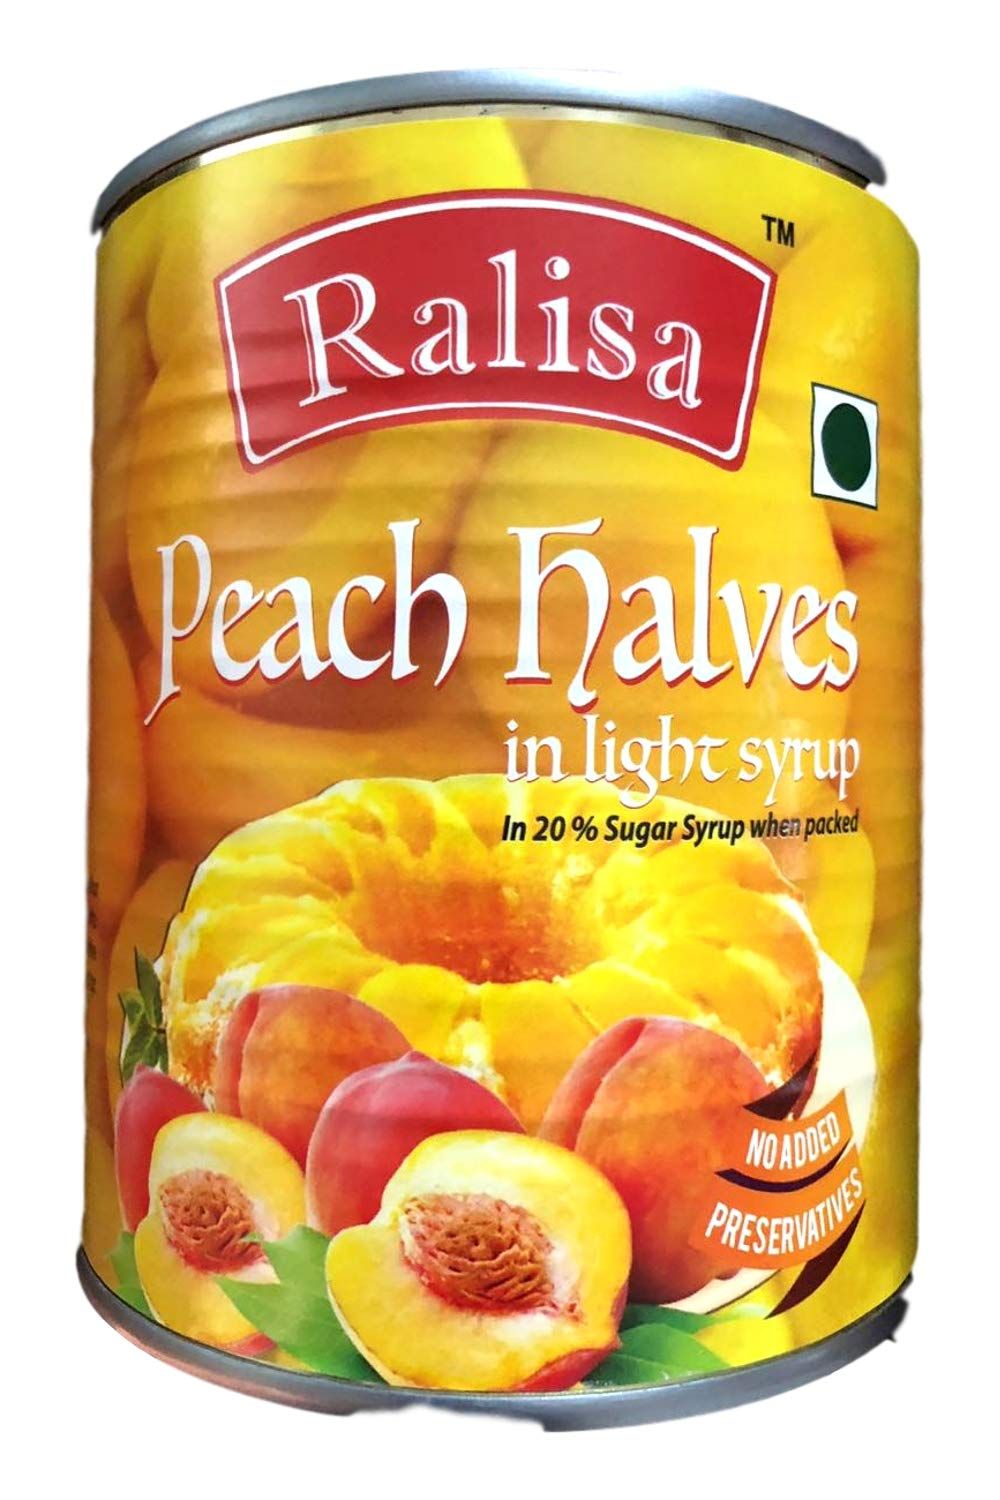 Ralisa Peach Halves Image